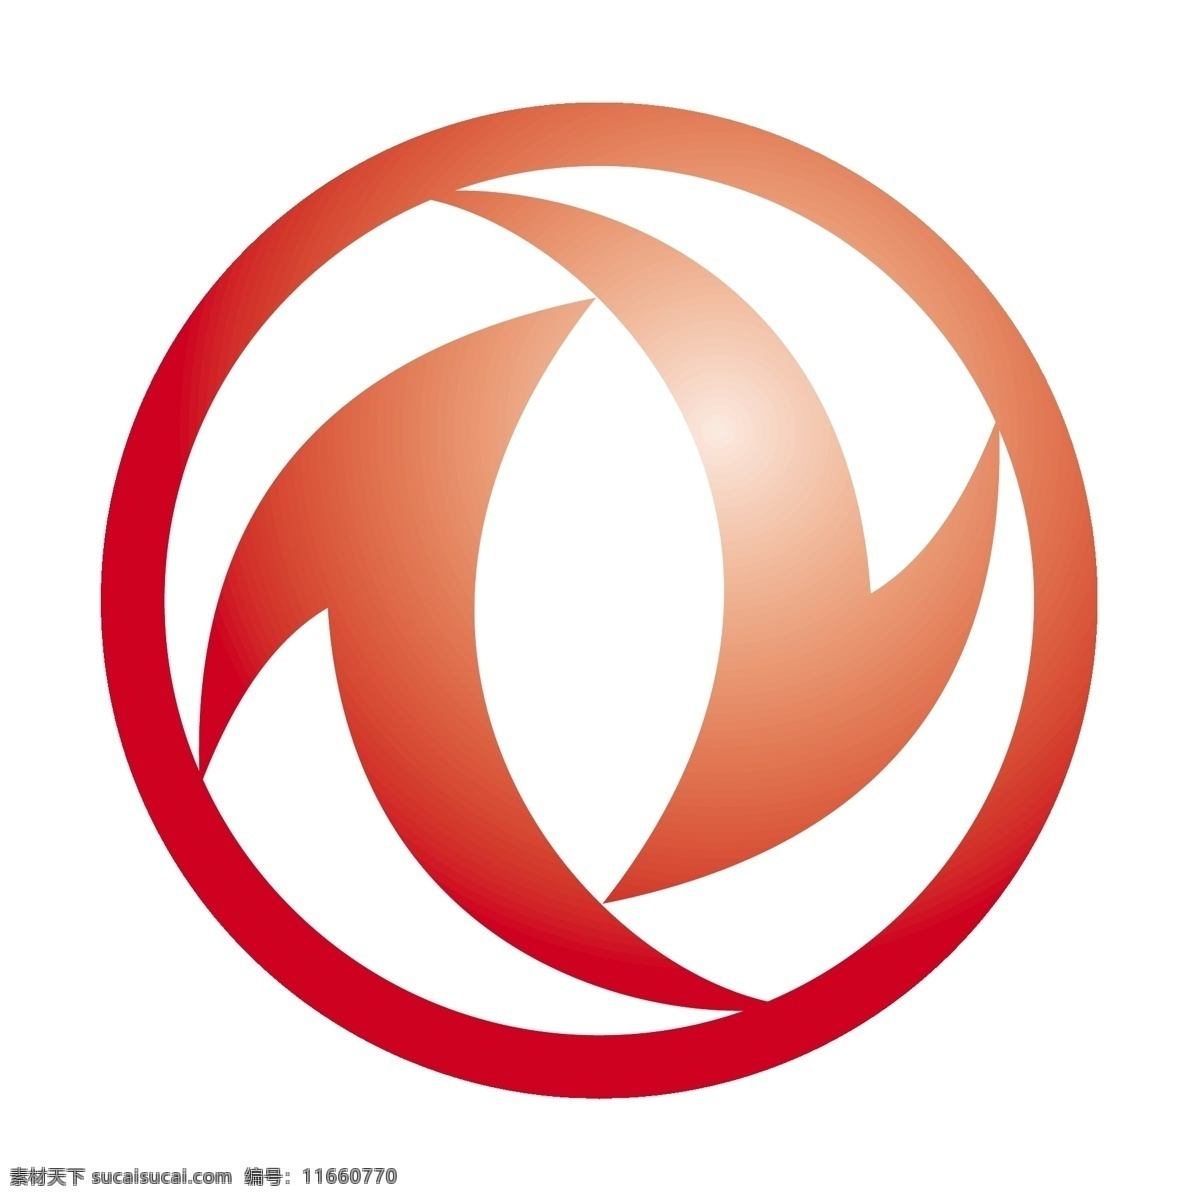 东风汽车 免费 标志 psd源文件 logo设计